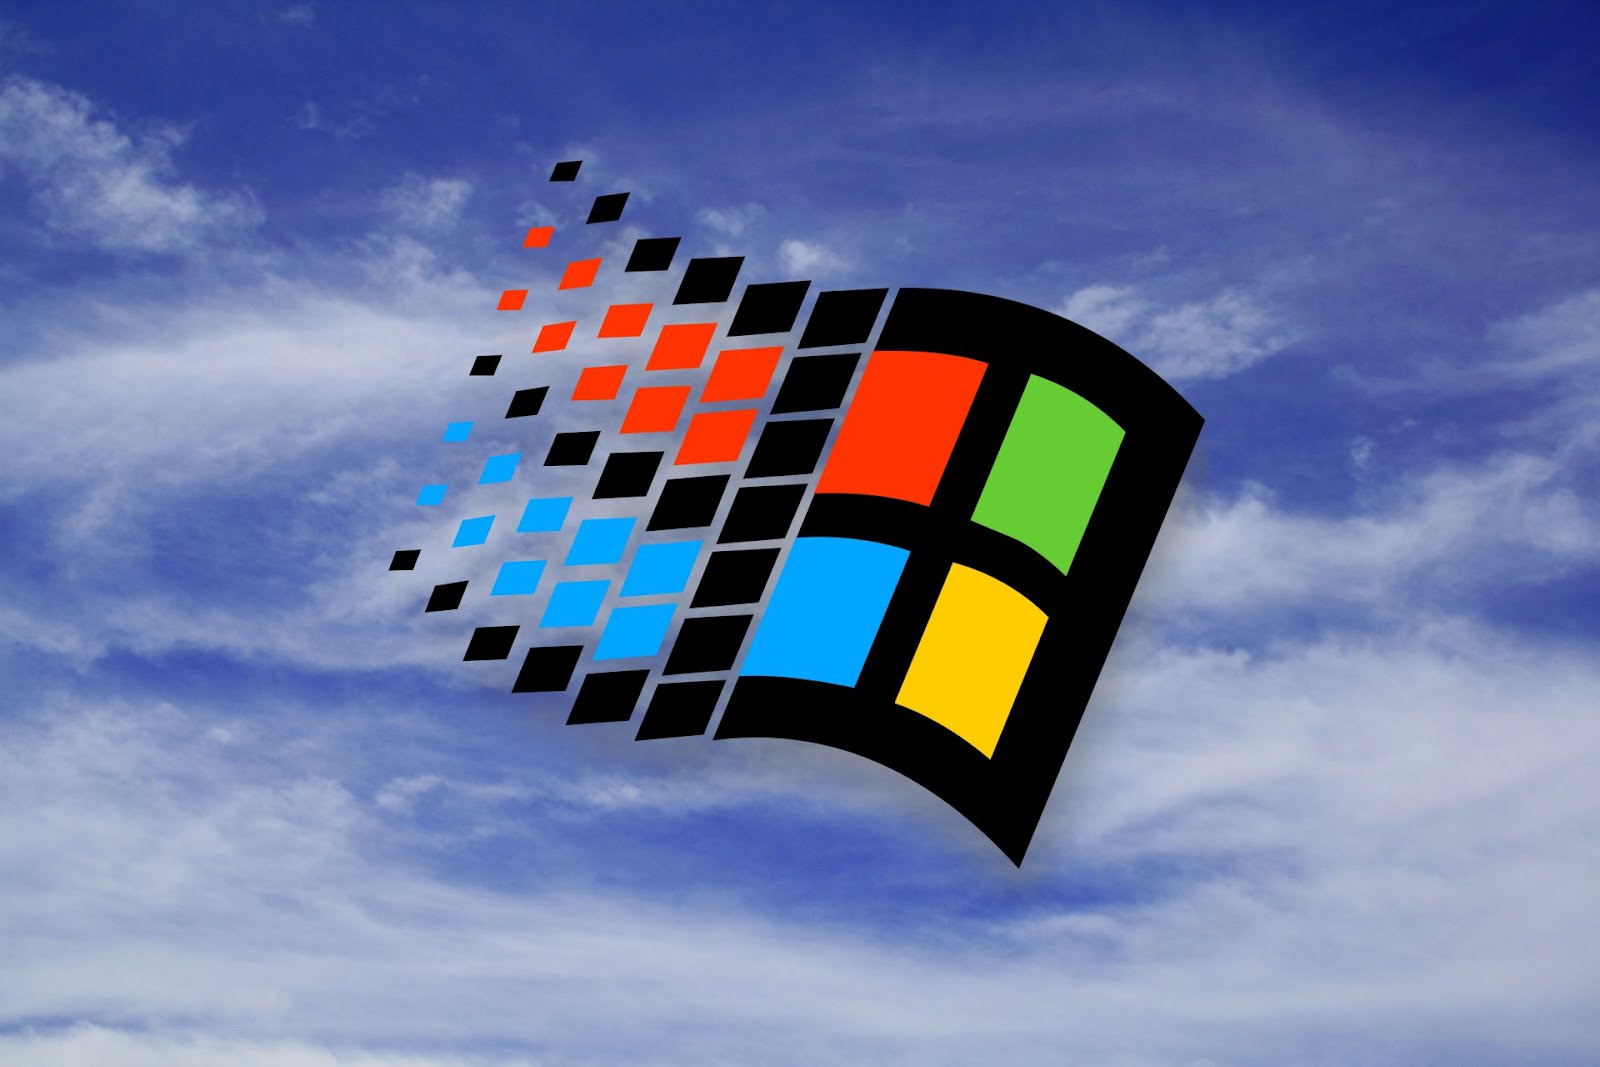 Cinci wallpapere cu Windows 98 Wallpapere Imagini Desktop Poze